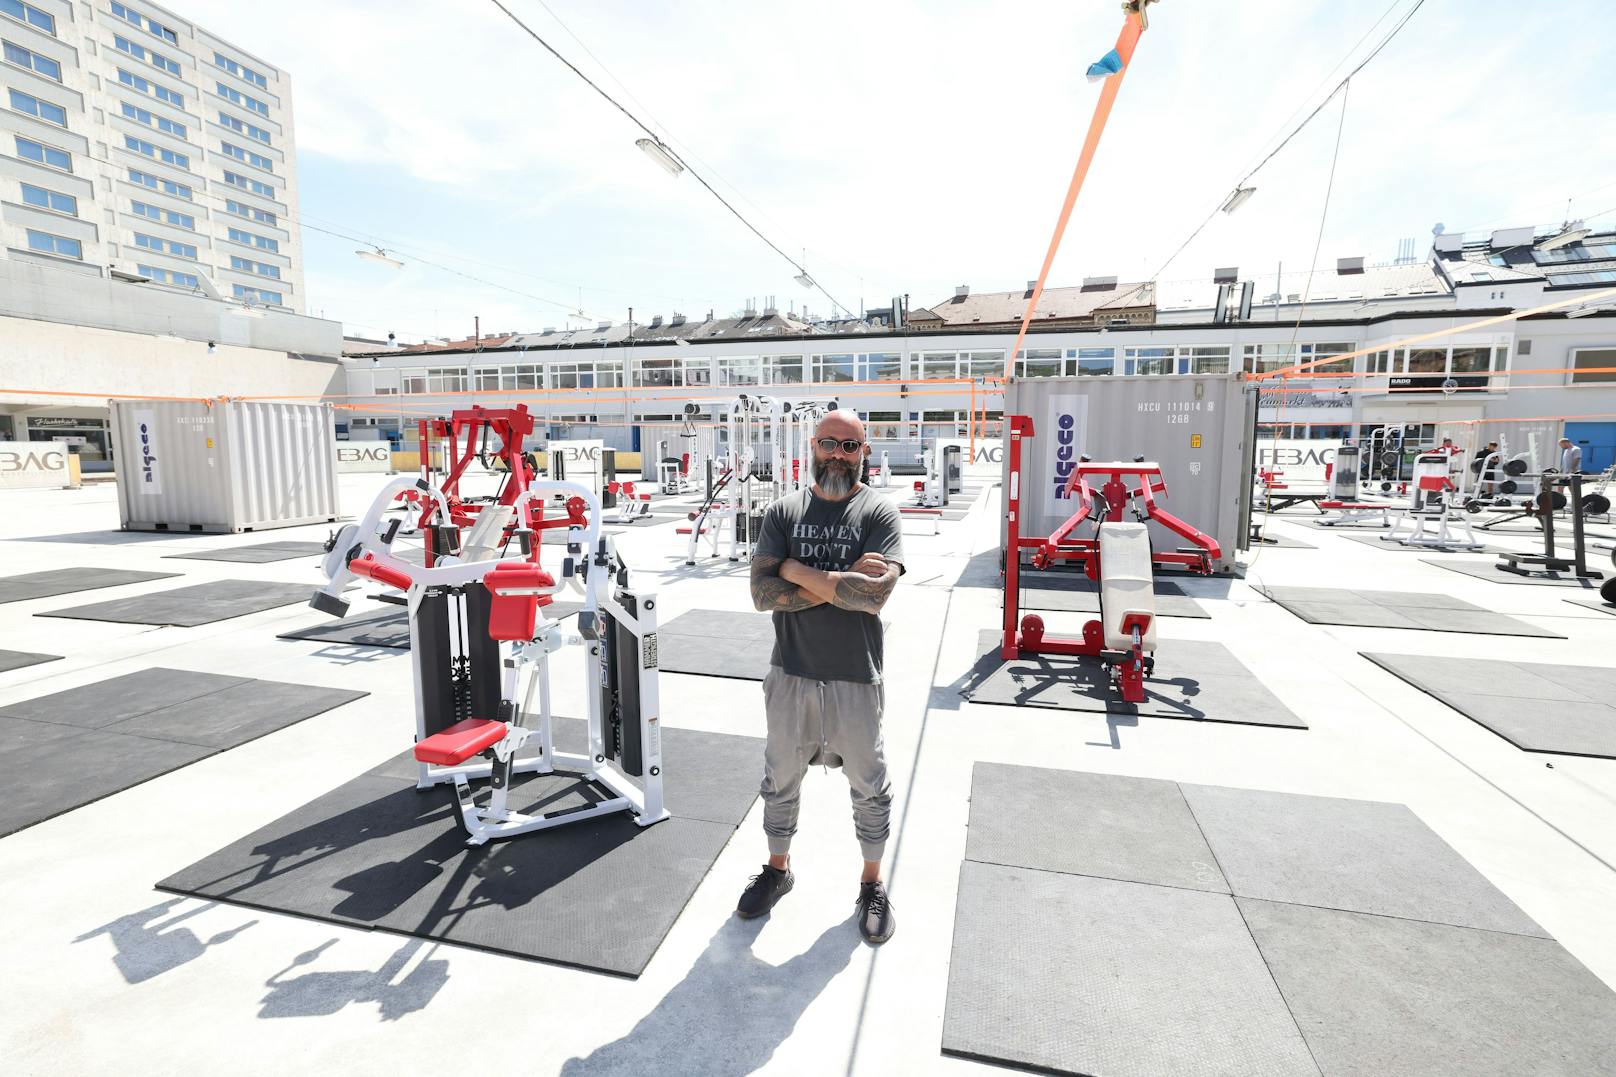 Inhaber Ussy Doleh hat das Fitnesscenter in nur einer Woche auf die Beine gestellt.